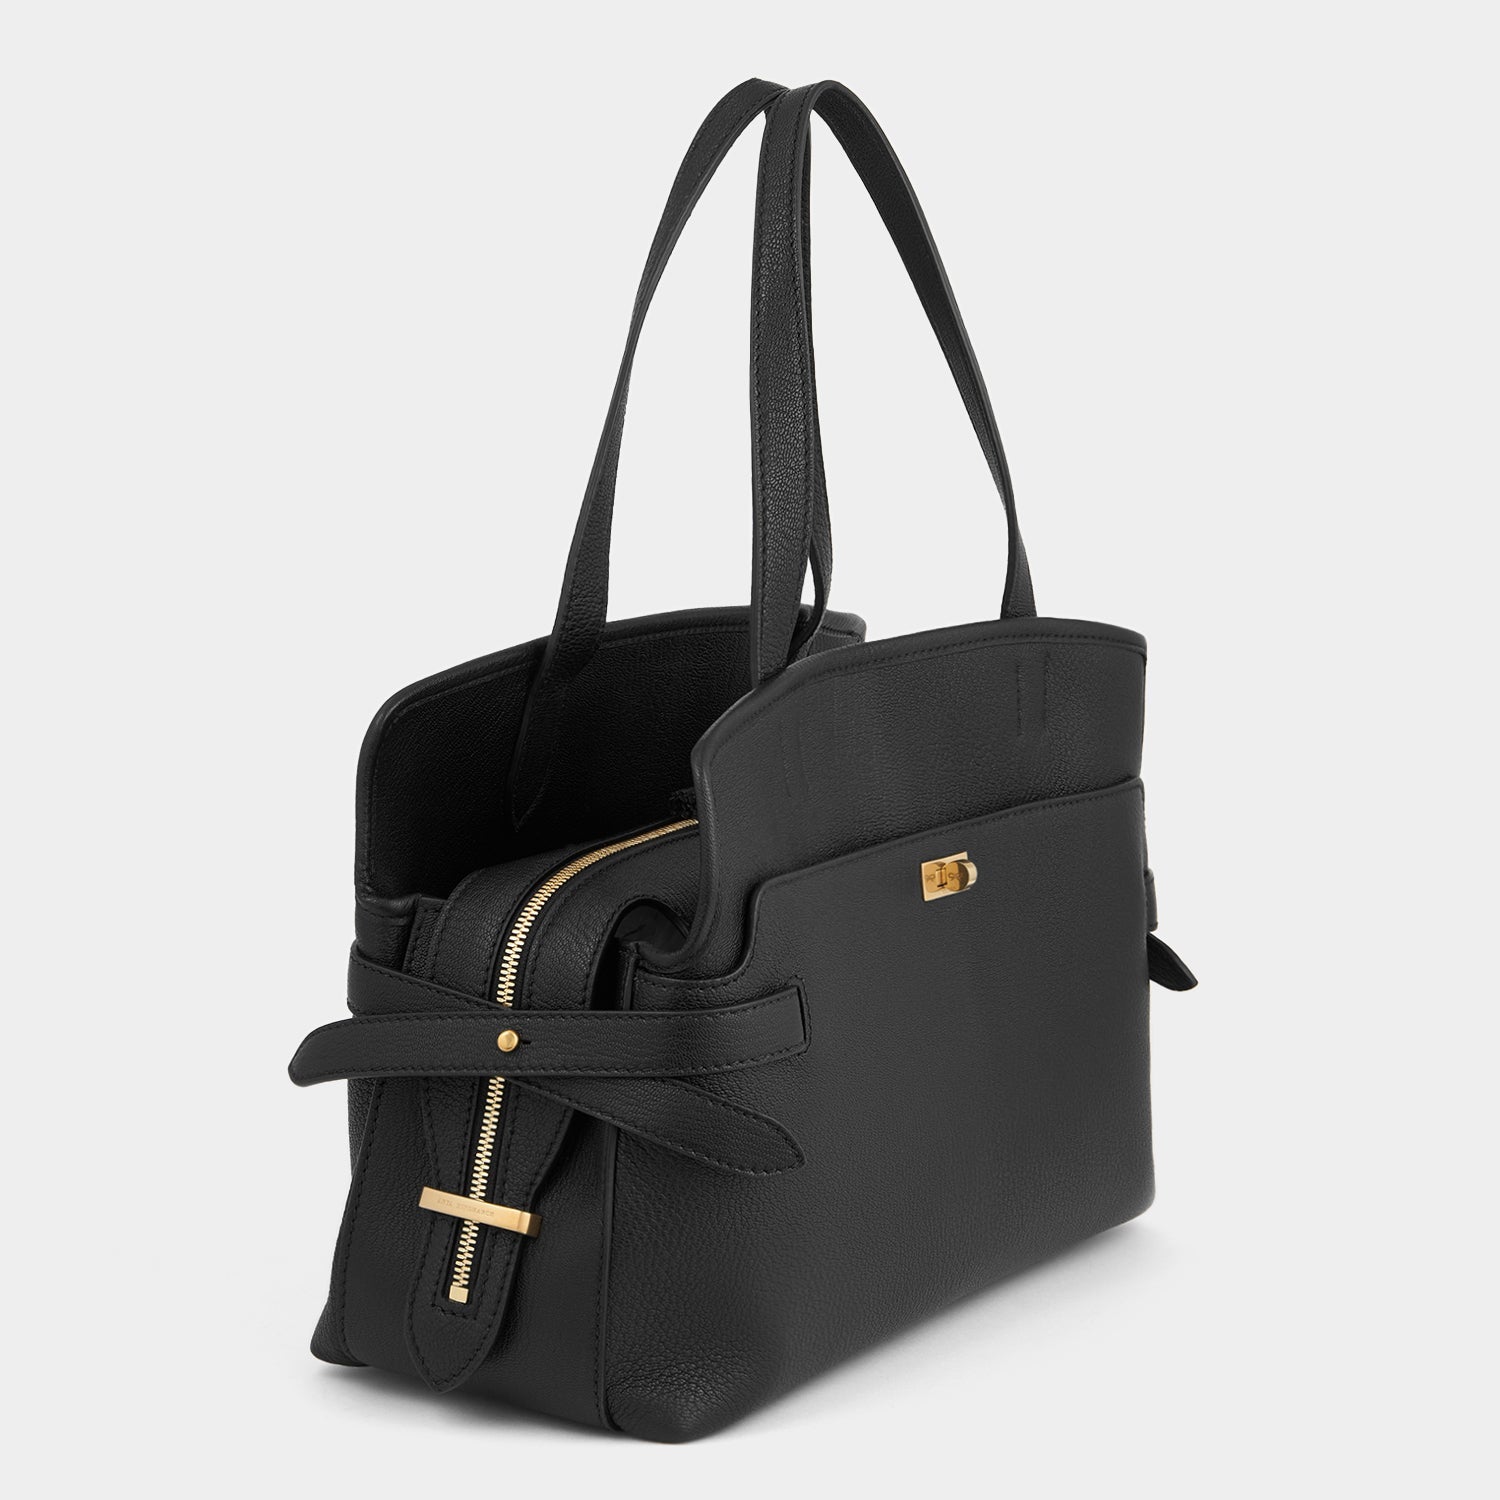 LOVEVOOK 4Pcs Bags Set: Large Shoulder Bag + Crossbody bag + Clutch +